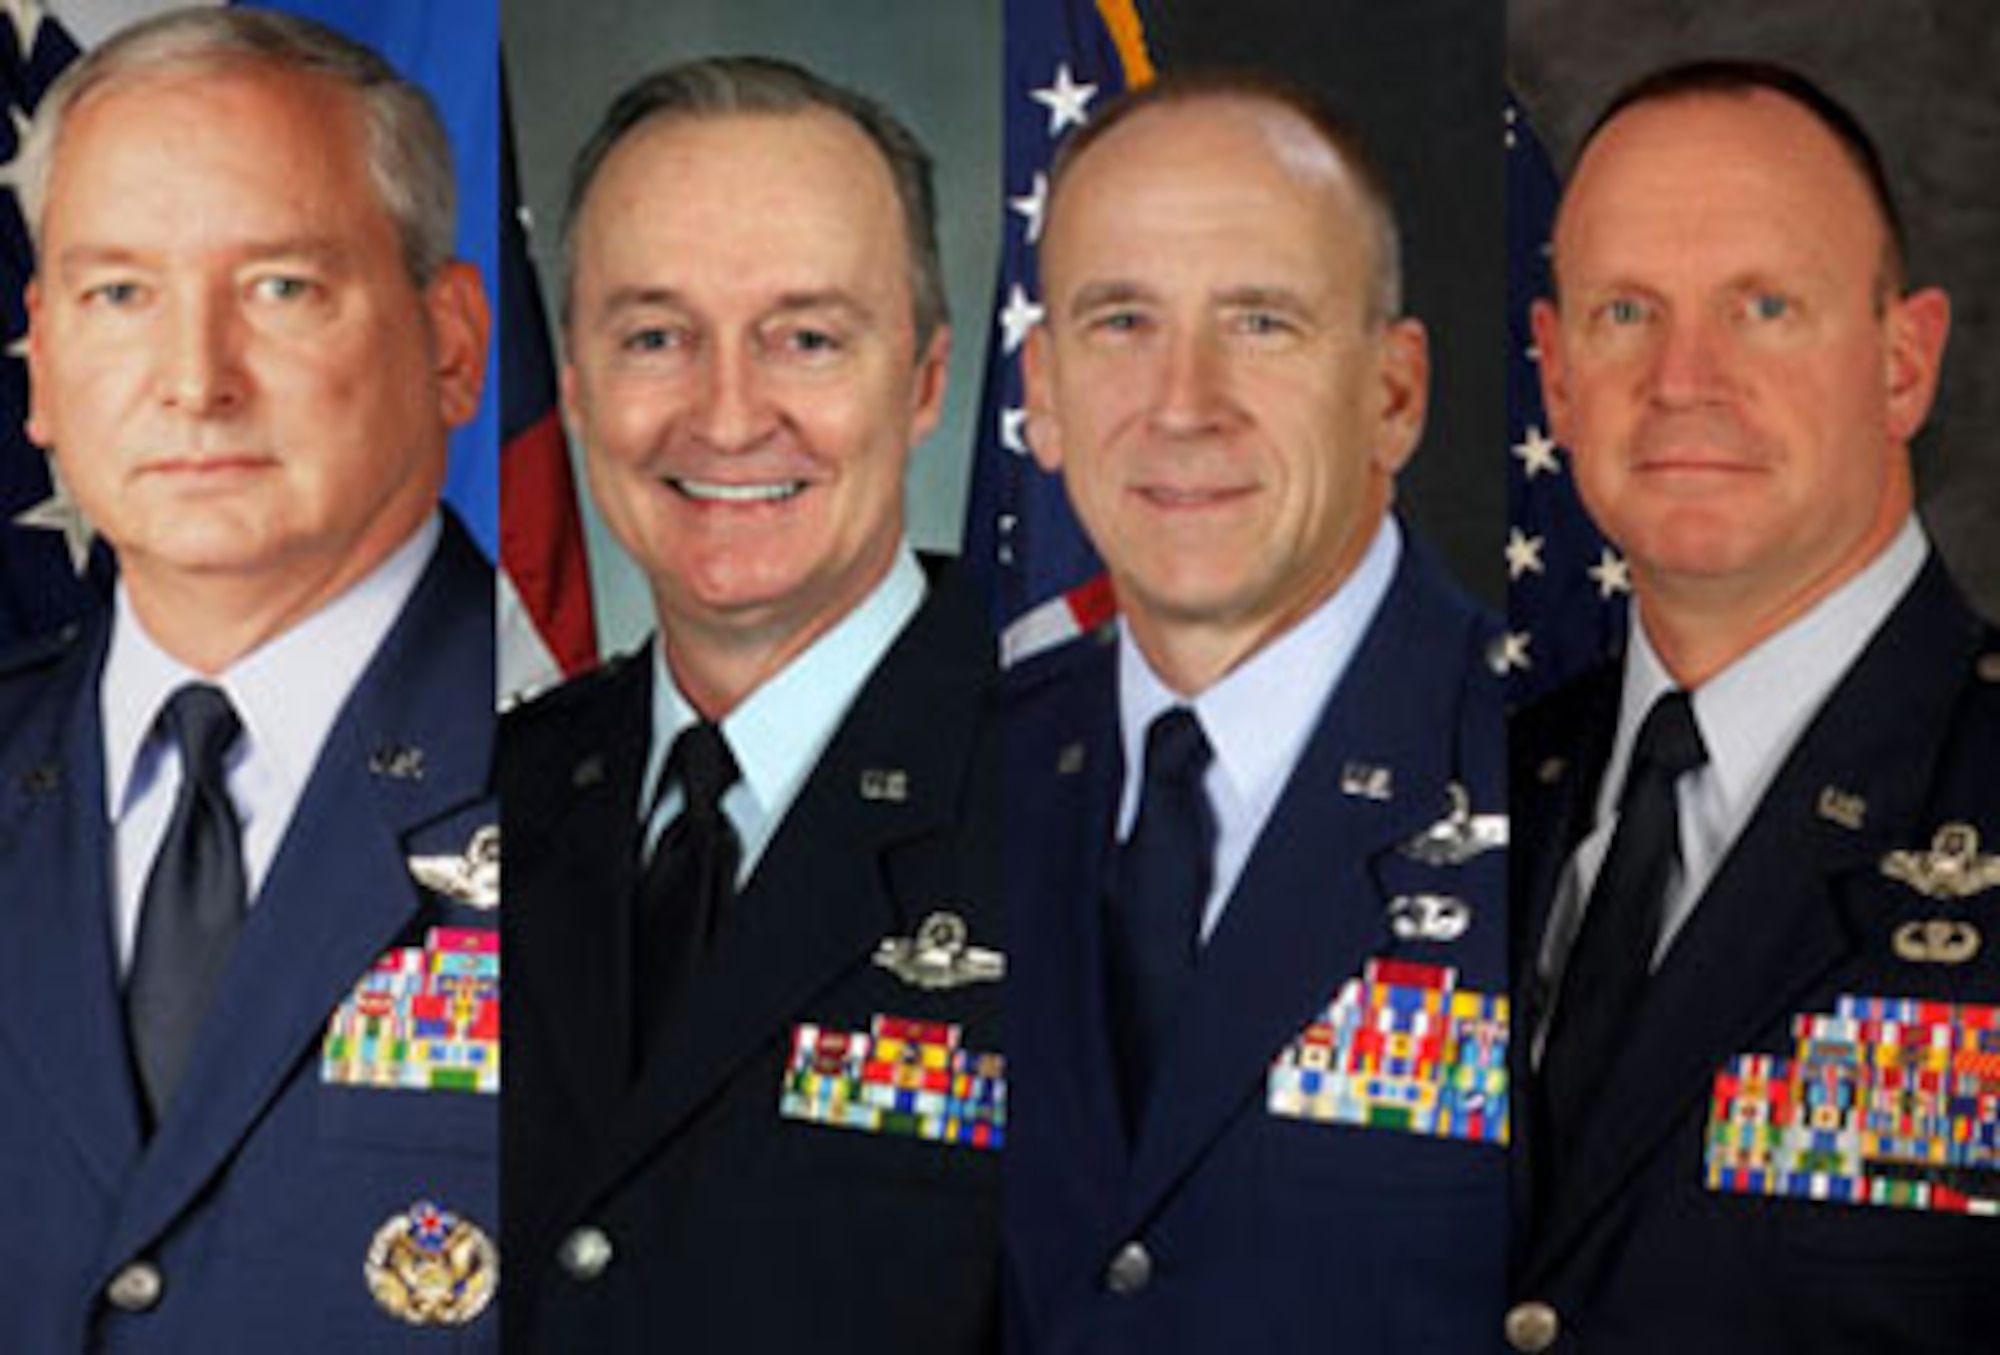 Air Force Reserve Command announced senior leader changes June 6. From left: Brig. Gen. Stephen “Fritz” Linsenmeyer, Brig. Gen. Edmund D. Walker, Col. Donald R. Lindberg and Col. Christian G. Funk. (U.S. Air Force illustration)